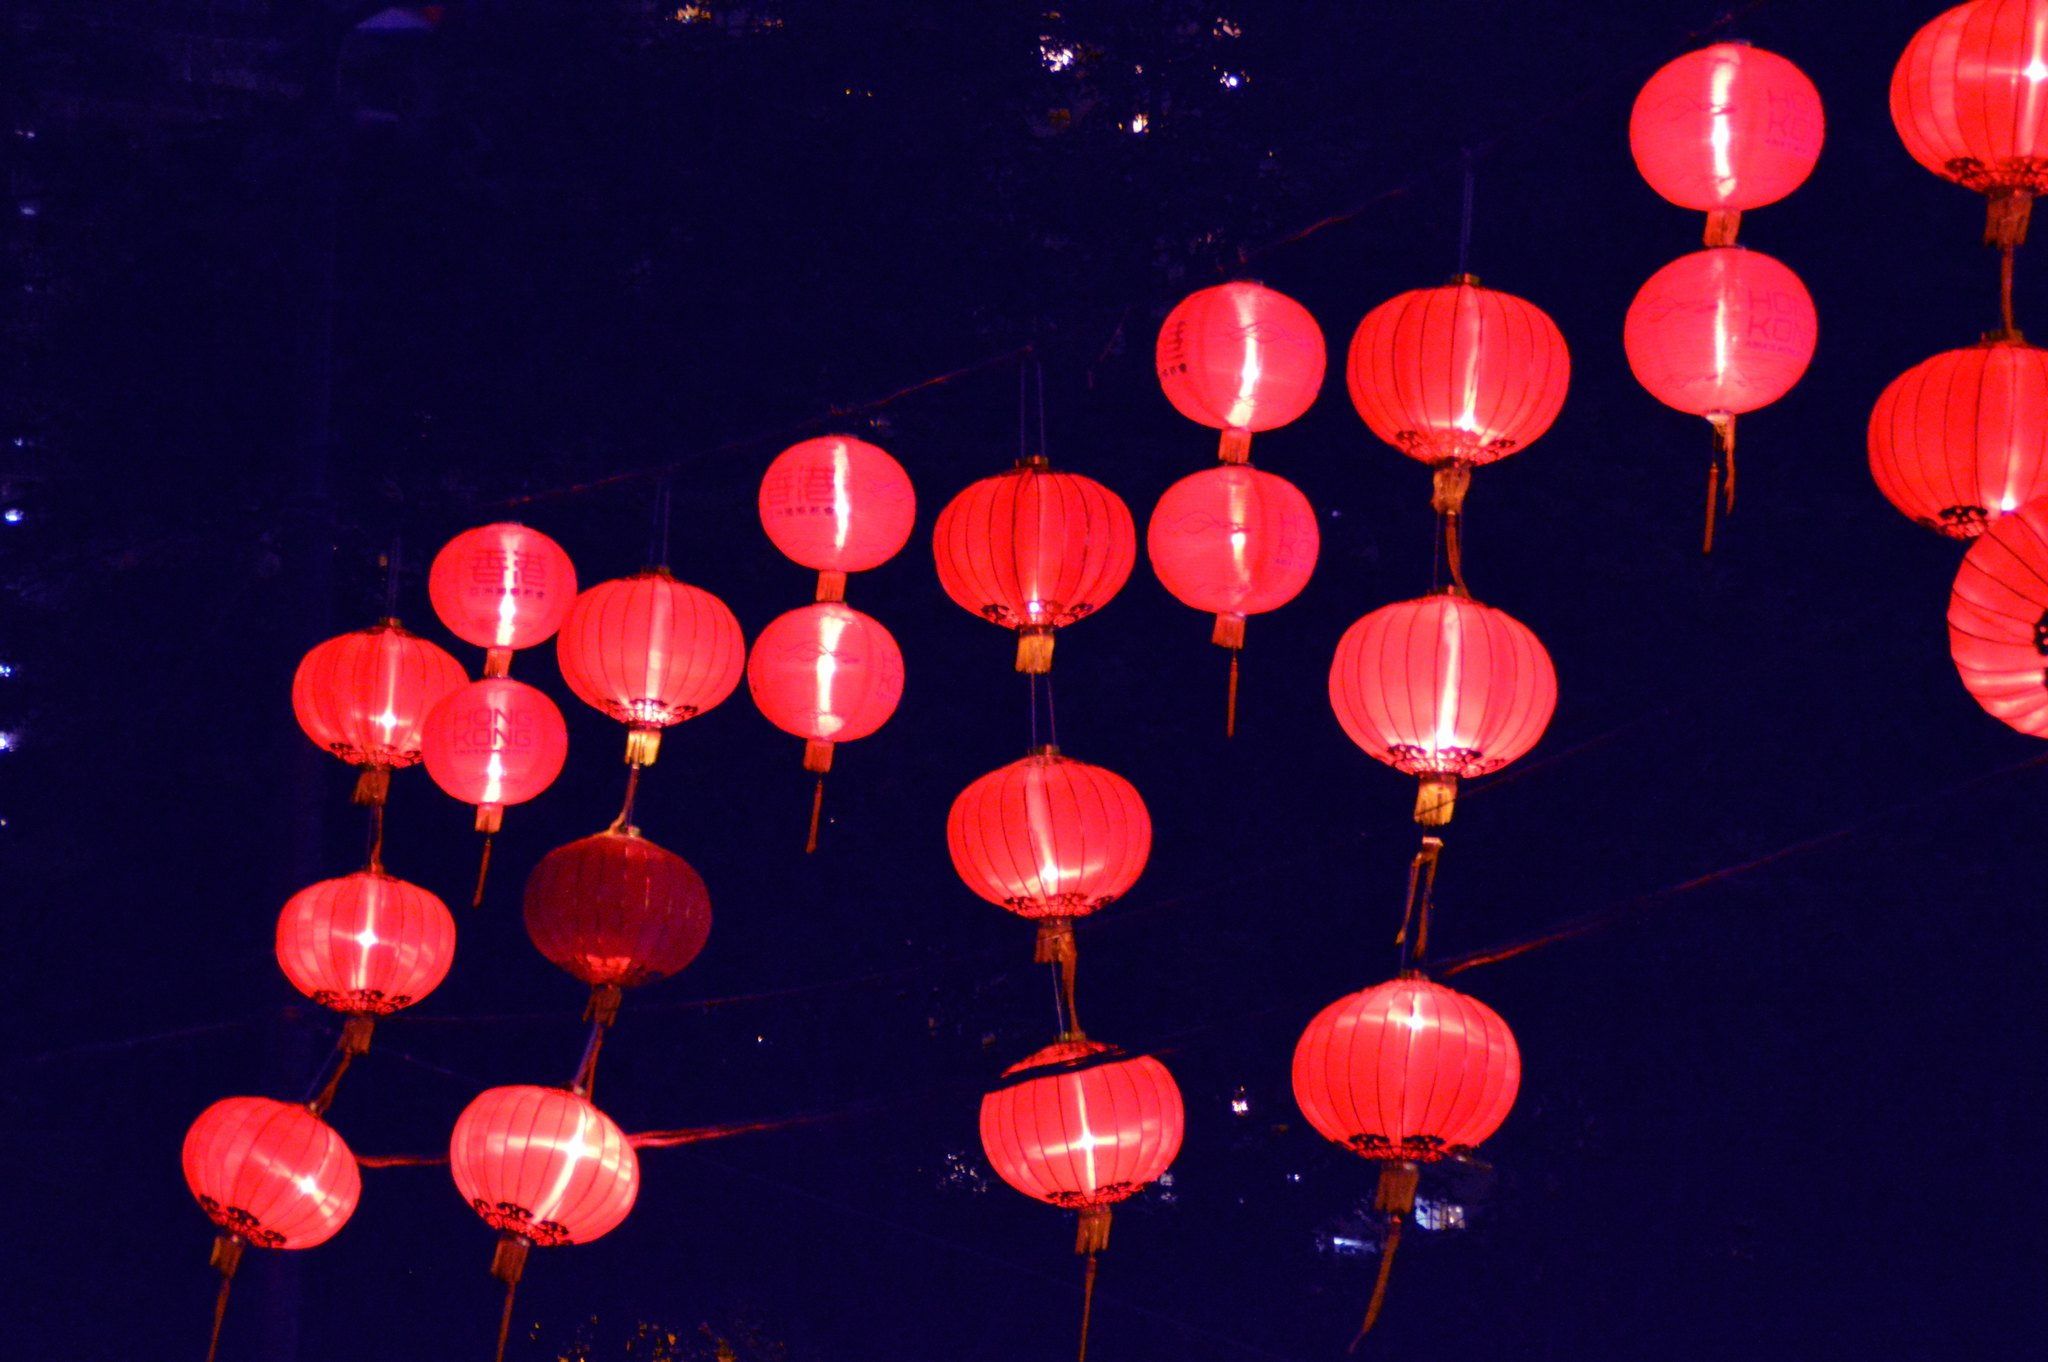 Lantern festival in Hong Kong